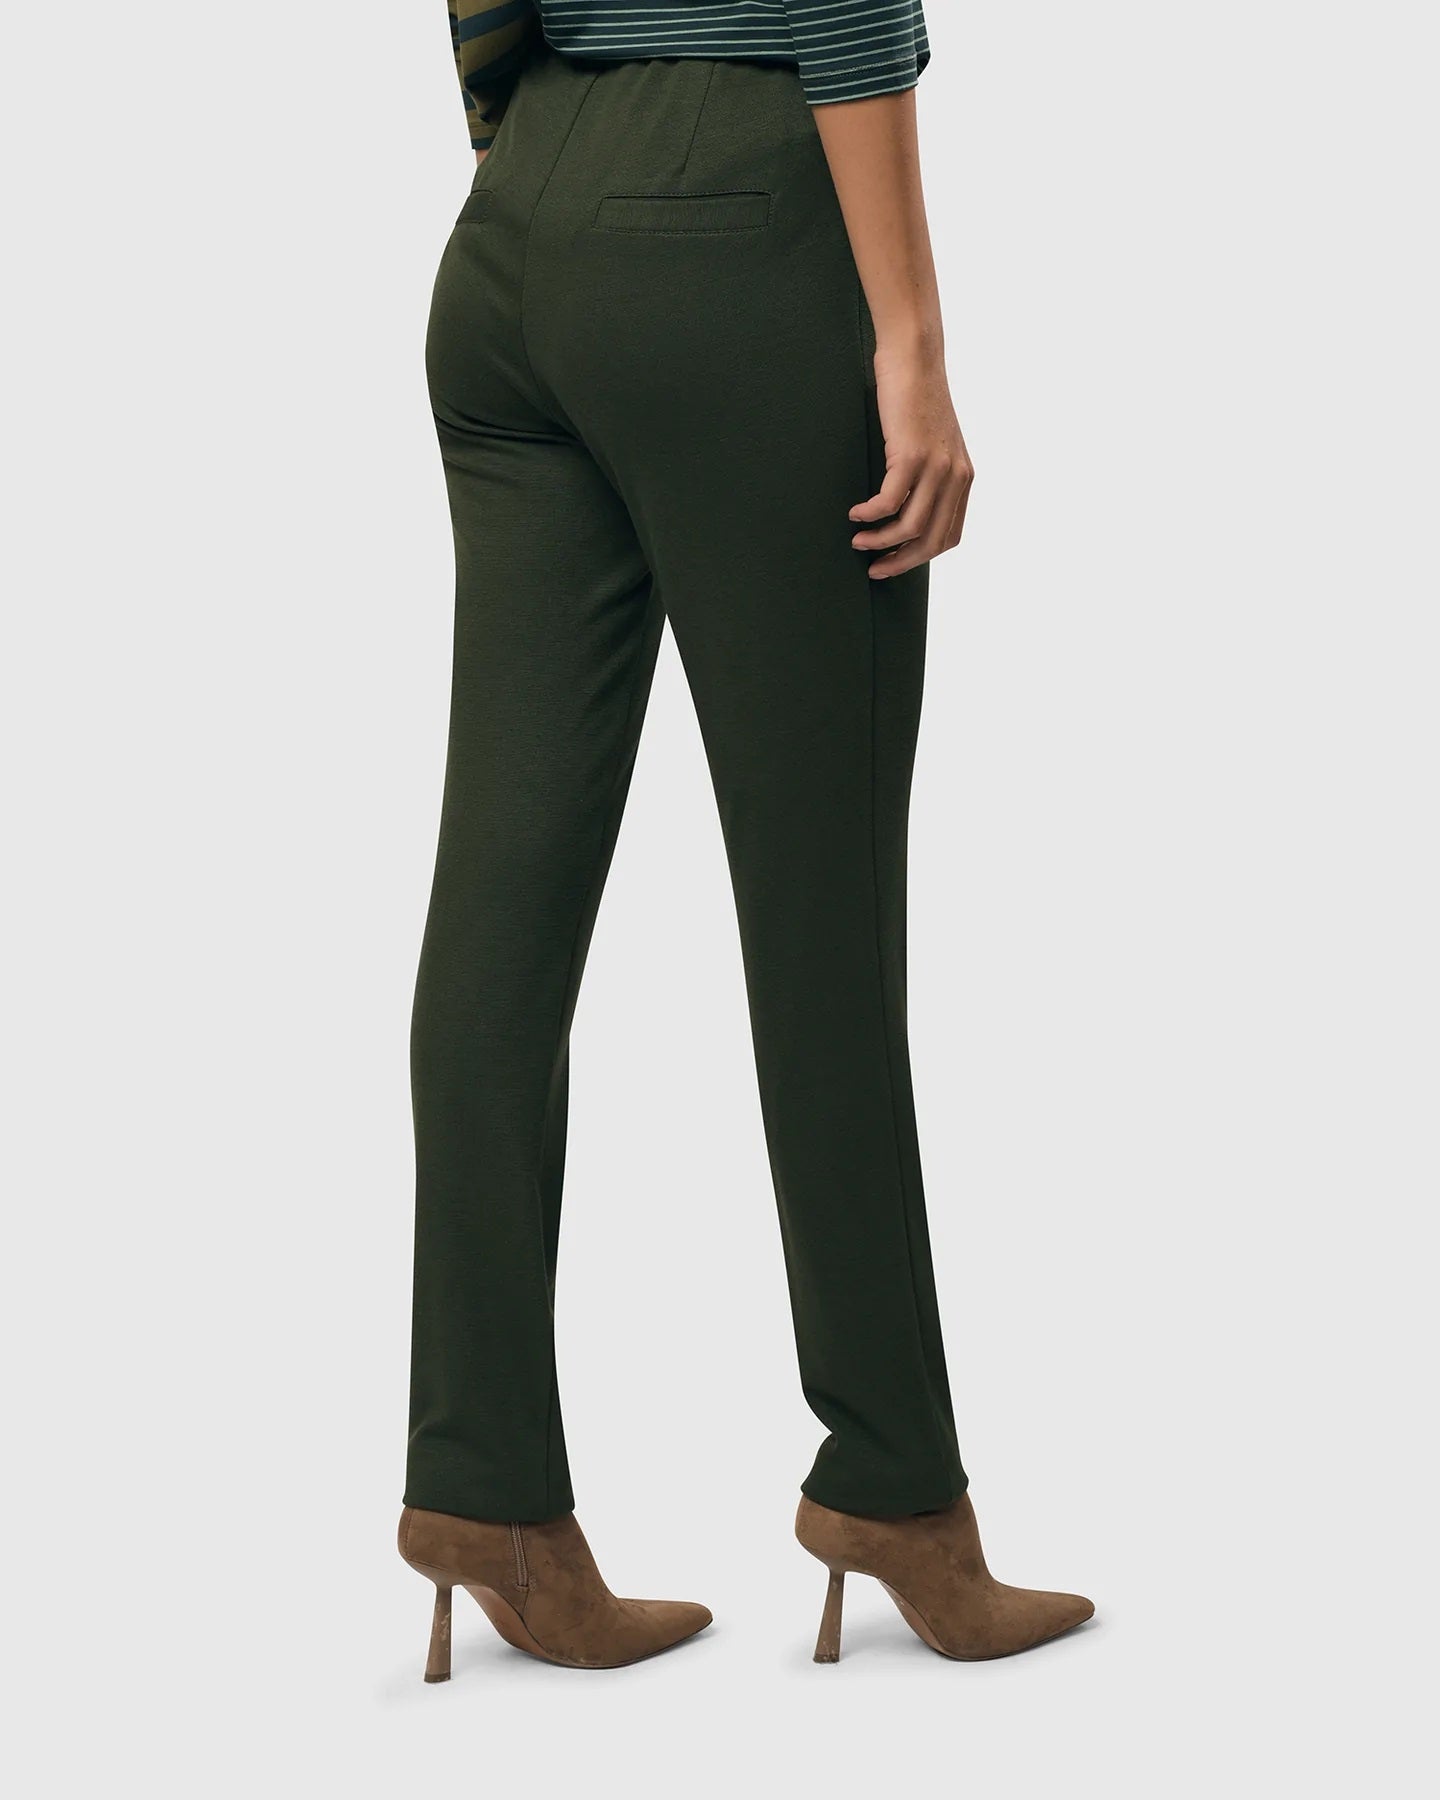 Essential Slim Pants in Green by Alembika